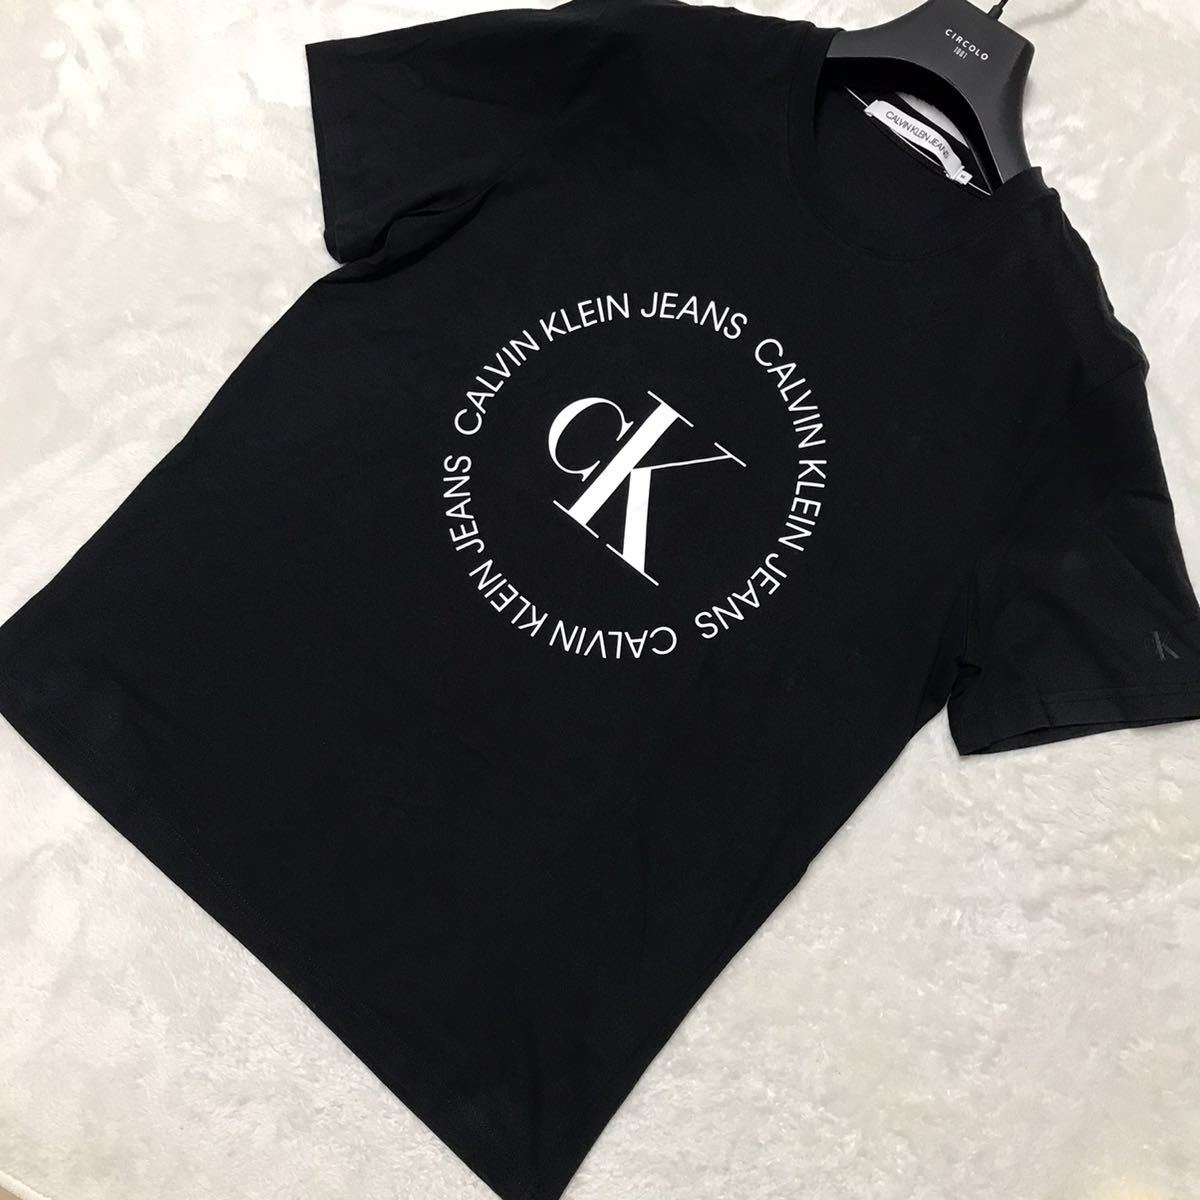 Calvin klein Jeans カルバンクラインジーンズ ロゴプリントTシャツ M〜L ブラック 黒 半袖 CK メンズ トップス_画像1